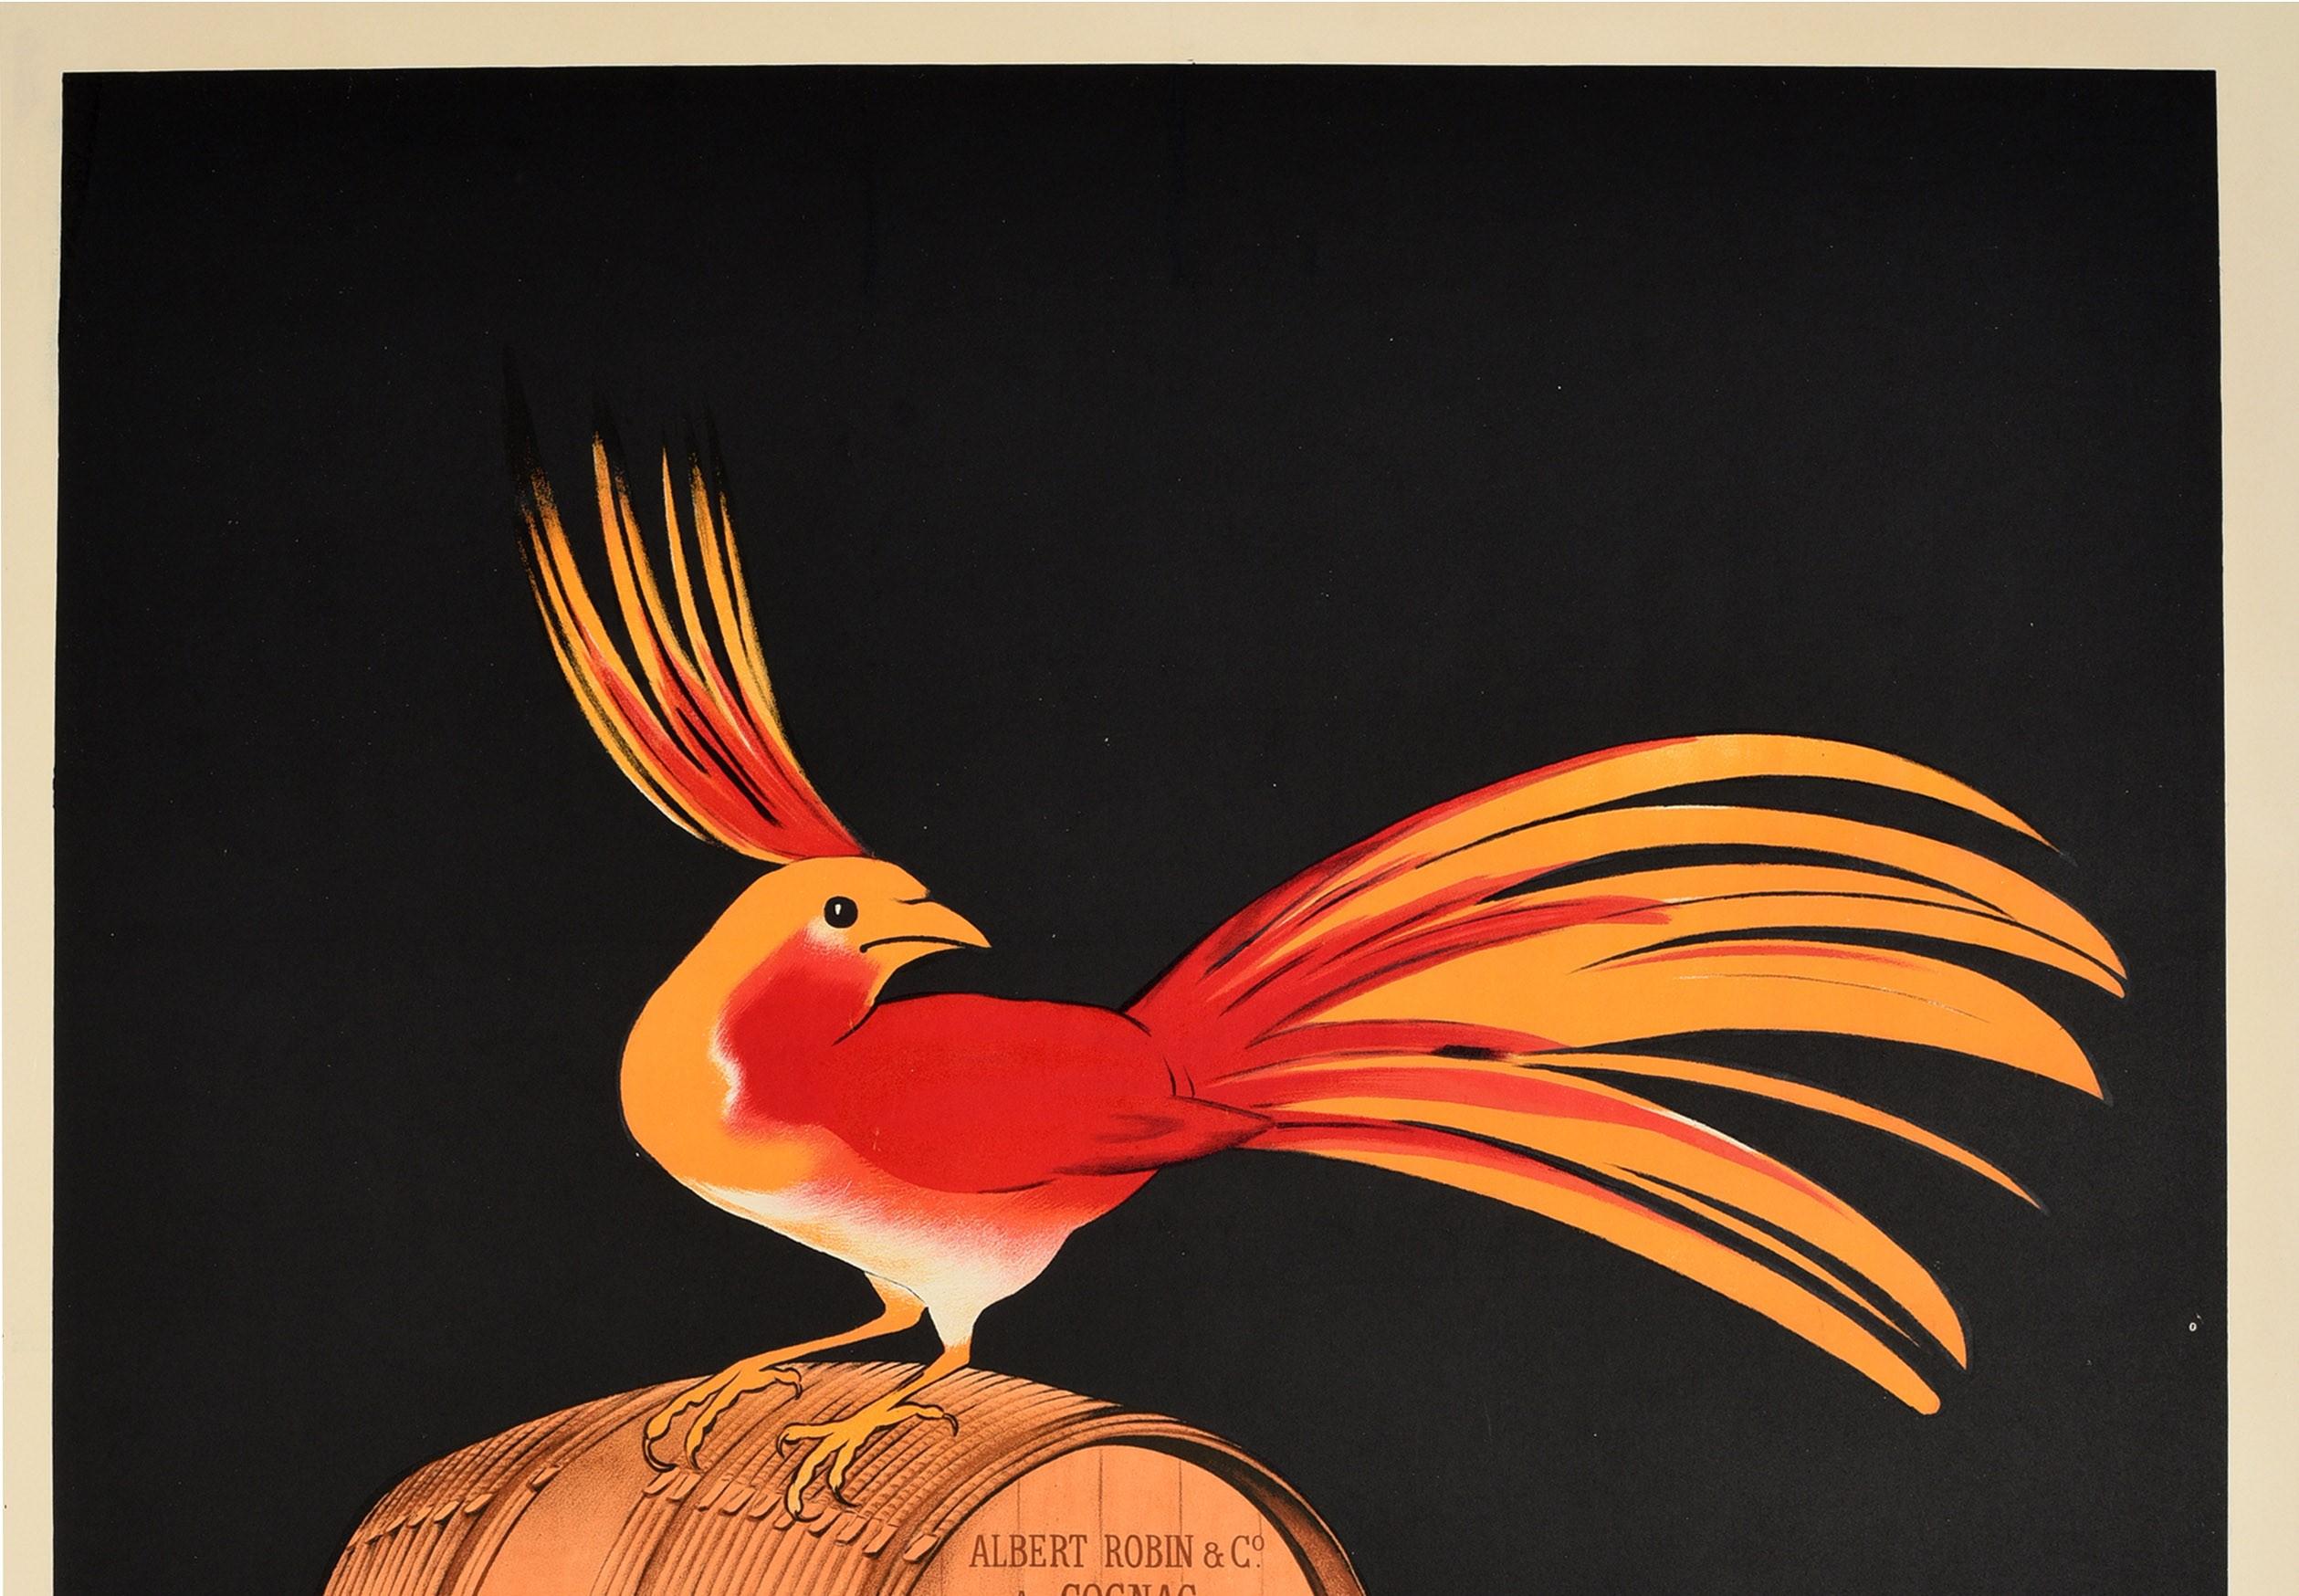 Affiche publicitaire originale et ancienne pour le cognac Albert Robin, avec un superbe dessin du célèbre affichiste Leonetto Cappiello (1875-1942) représentant un oiseau coloré rouge et orange sur un tonneau en bois de cognac Albert Robin & Co